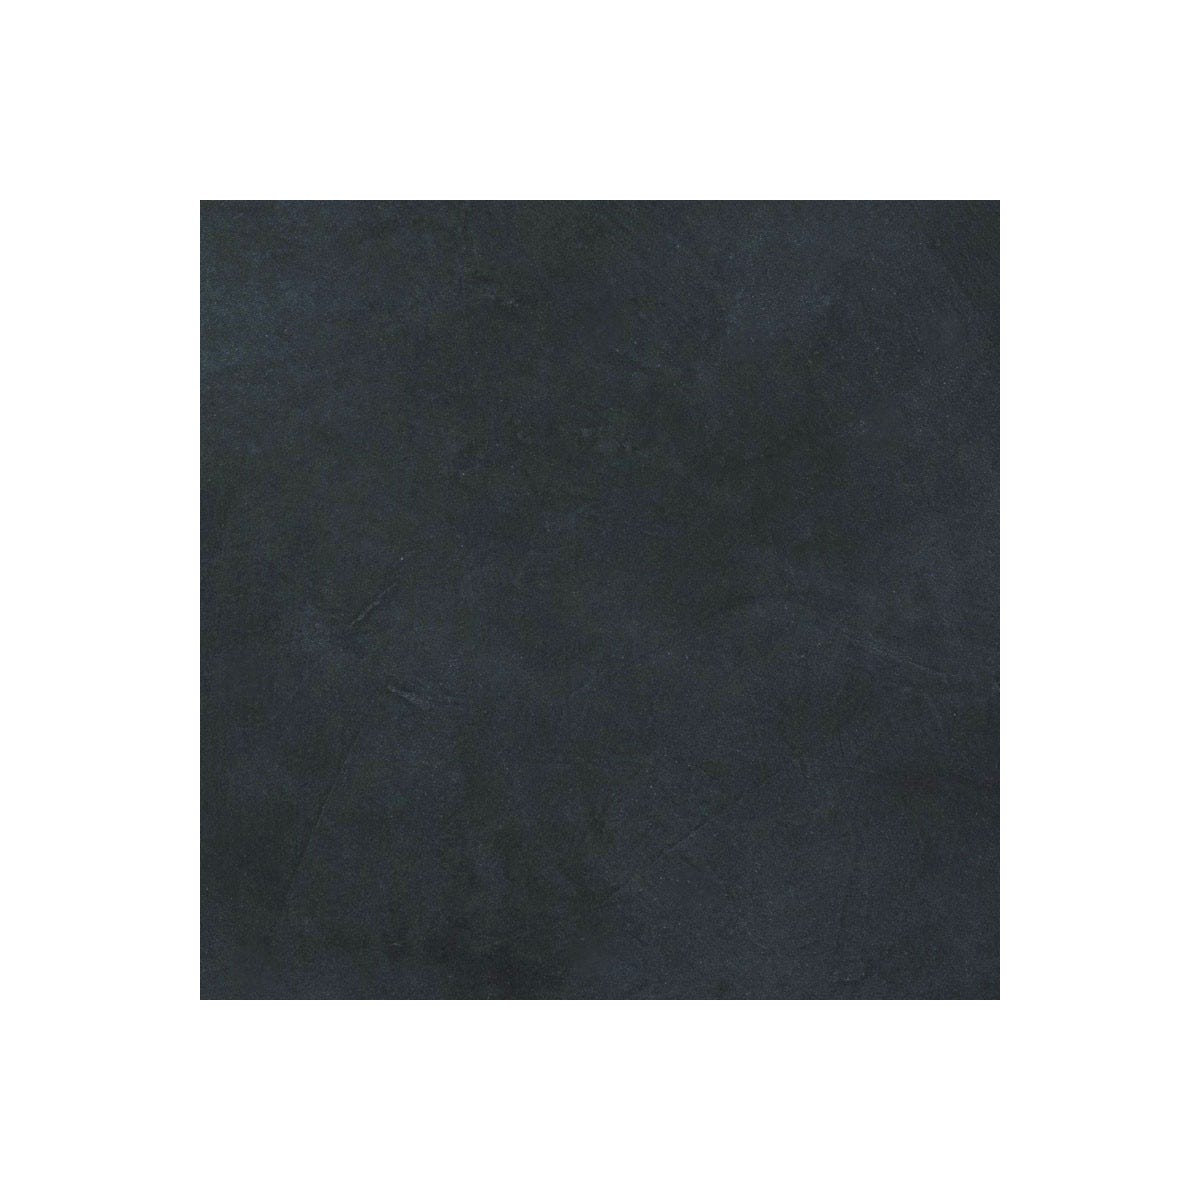 Béton Ciré Sol en - Primaire et vernis de finition inclus - 5 m² (en 2 couches) - Aronia Gris Noir - ARCANE INDUSTRIES 1